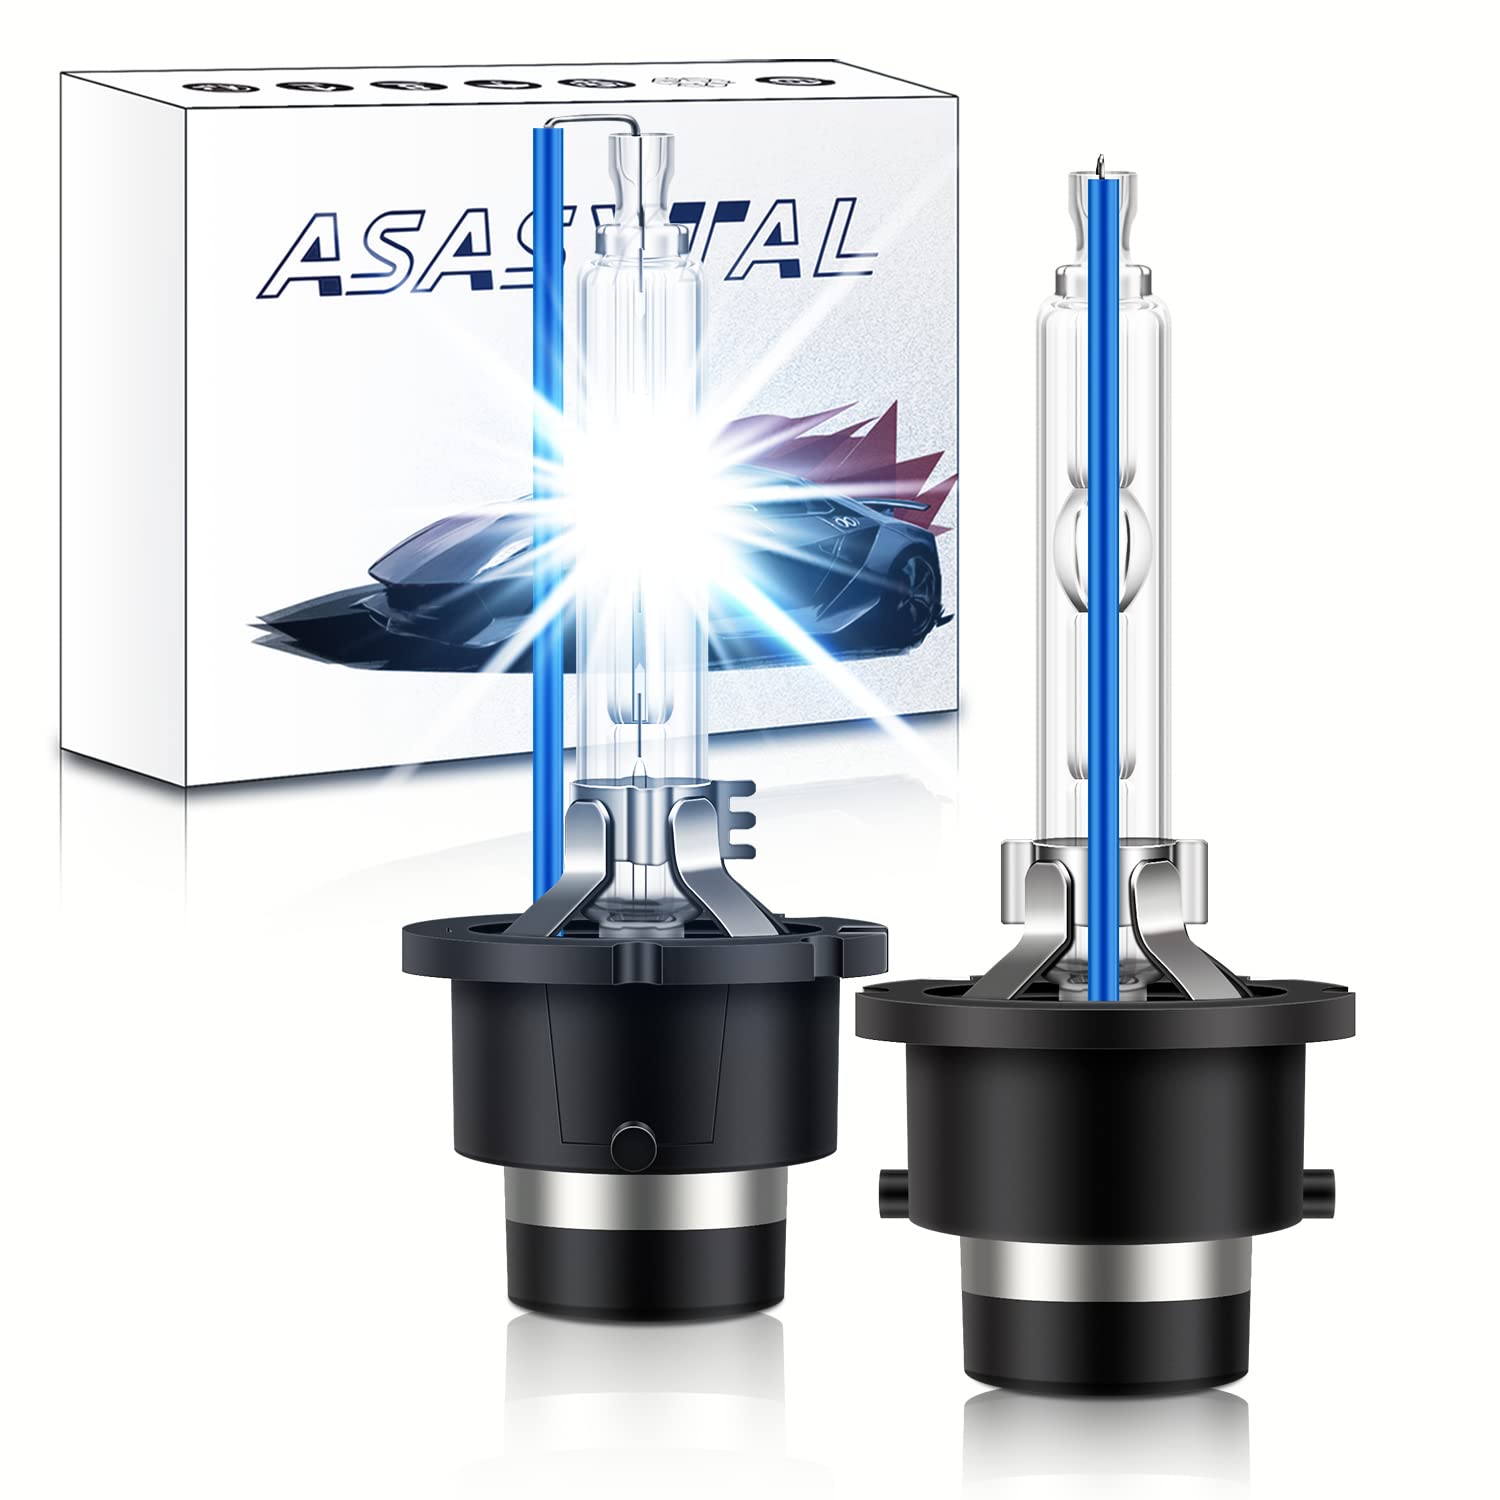 Asasytal D2S Xenonlampen 8000K Kaltblaue Xenarc Glühbirne, X Treme Entladungslampe mit Hoher Helligkeit 35W Bi HID Umrüstsatz für Original Xenon Außenscheinwerferlampen Upgrade, 1 Paar von Asasytal